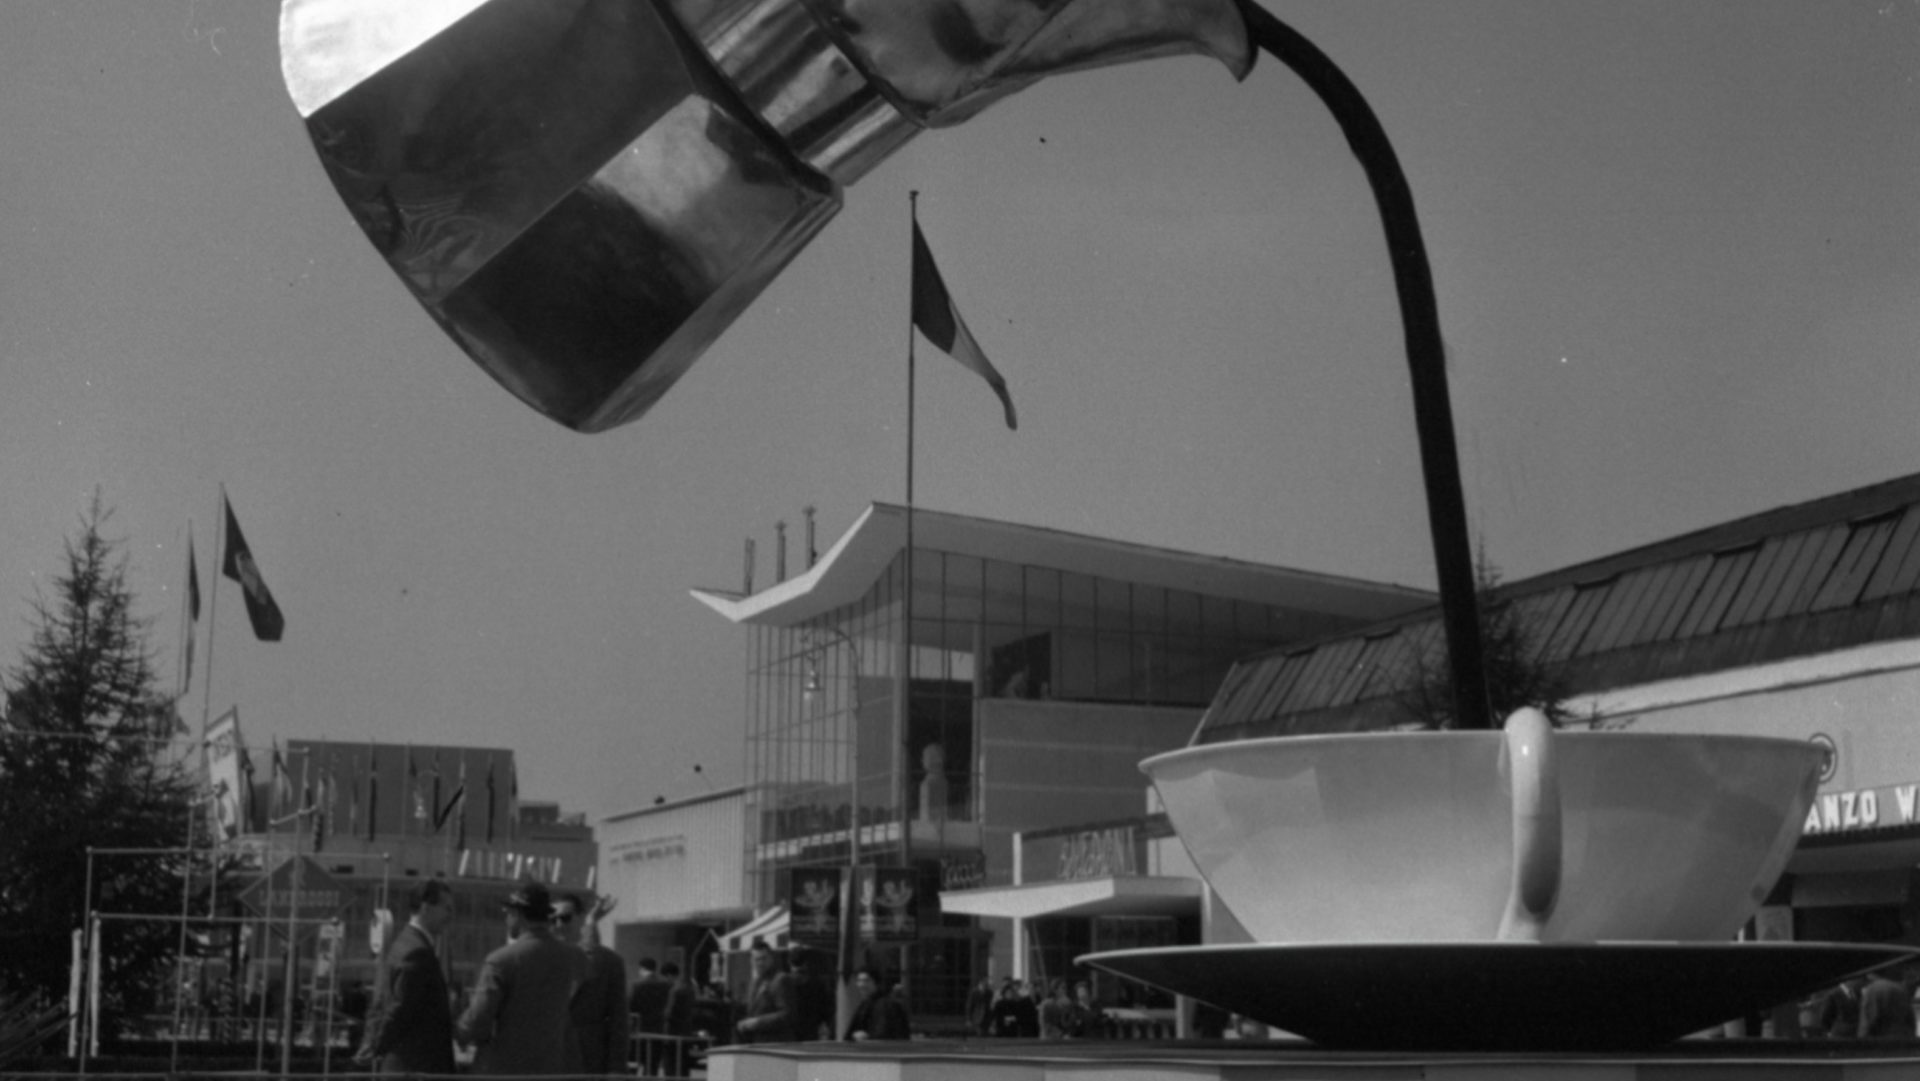 Installazione pubblicitaria Bialetti alla Fiera Campionaria di Milano, 1954